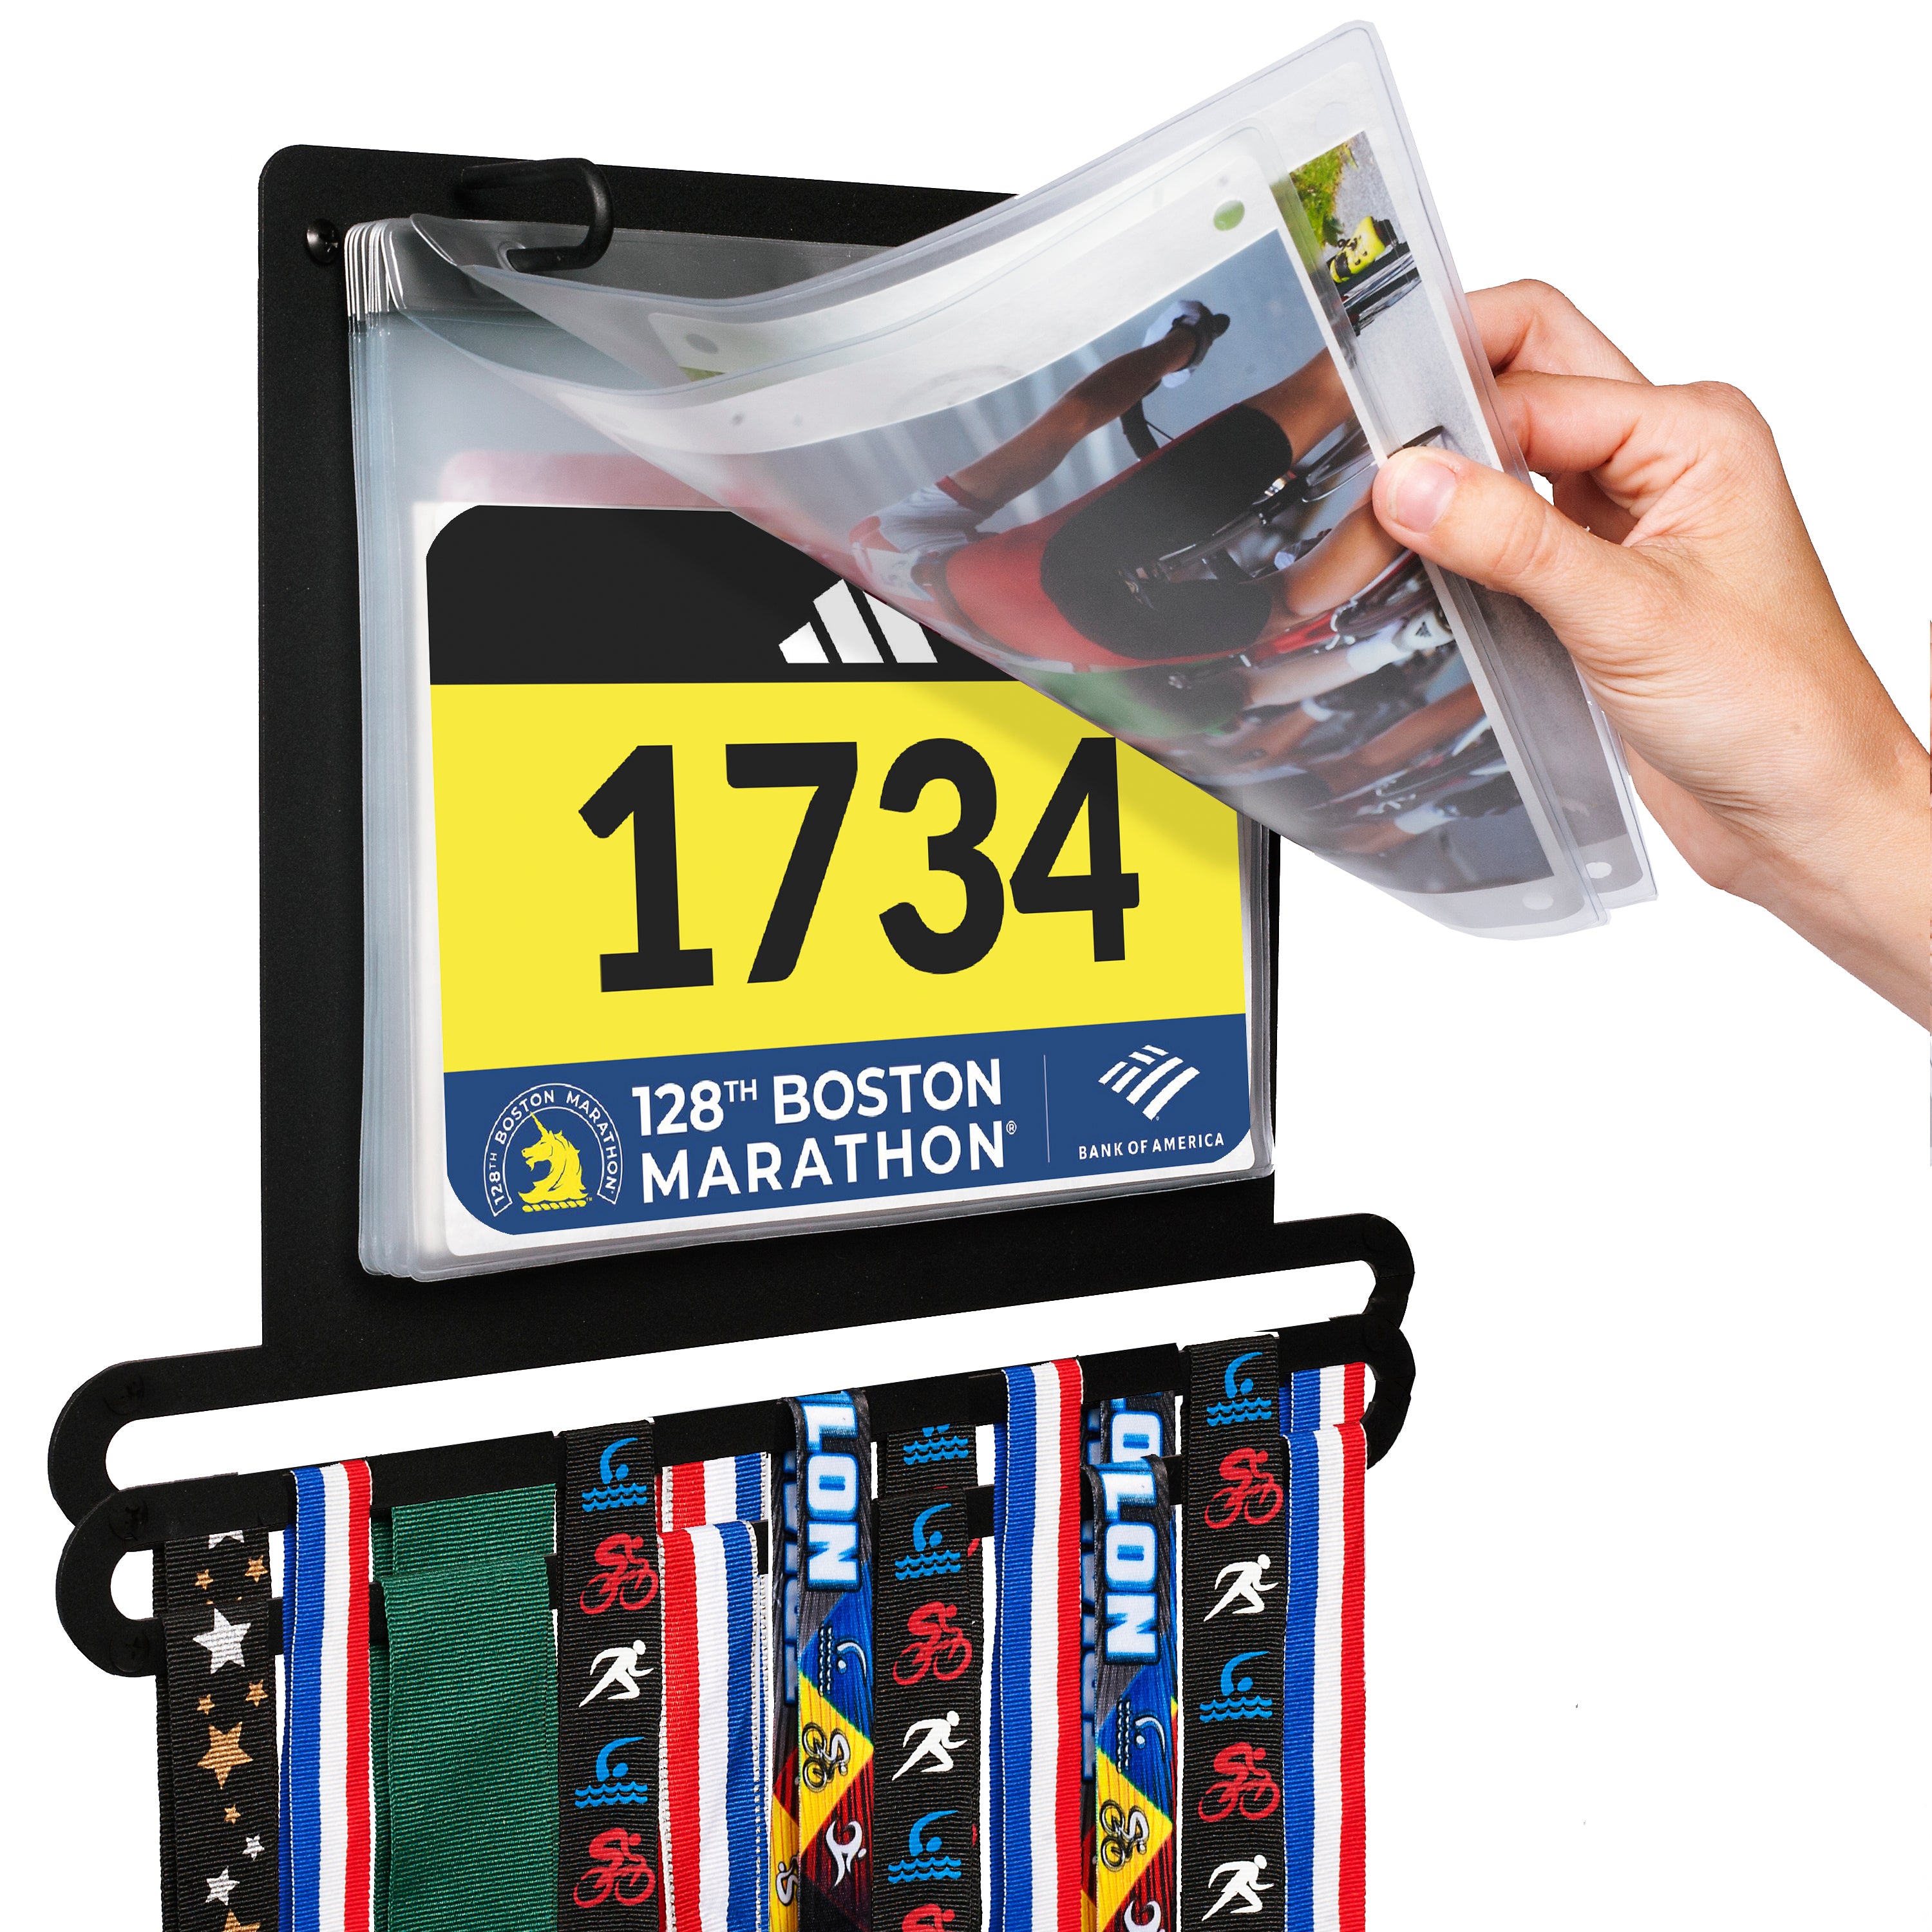 BibBoards on Instagram: Collector storage case holds up to 200 #bibboards # runners #running #bostonmarathon #savetheshirt